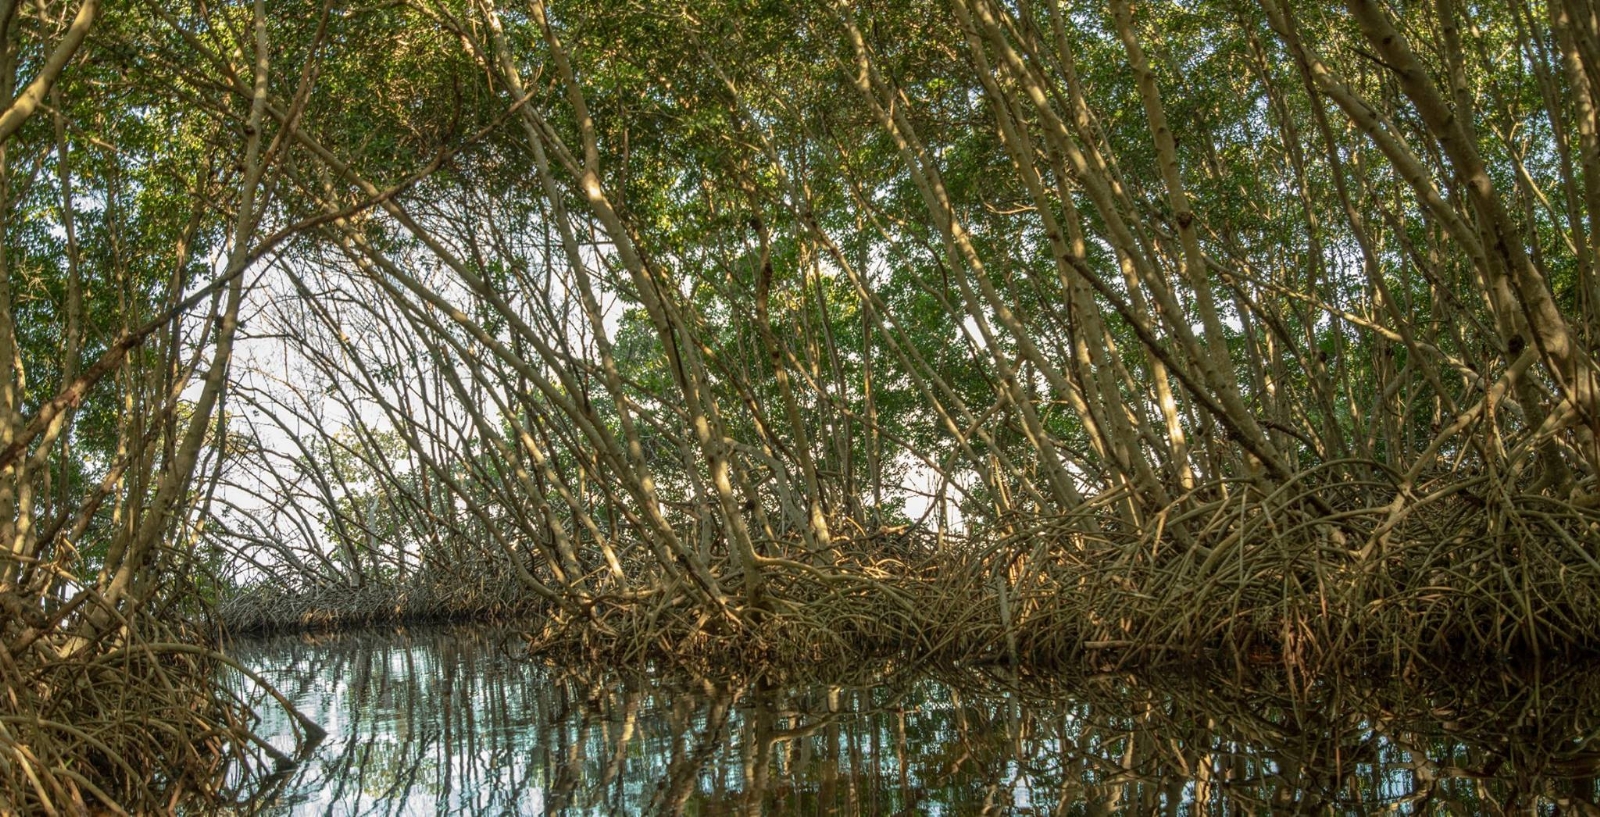 Universidad de Campeche protegerá los manglares de Costa Rica